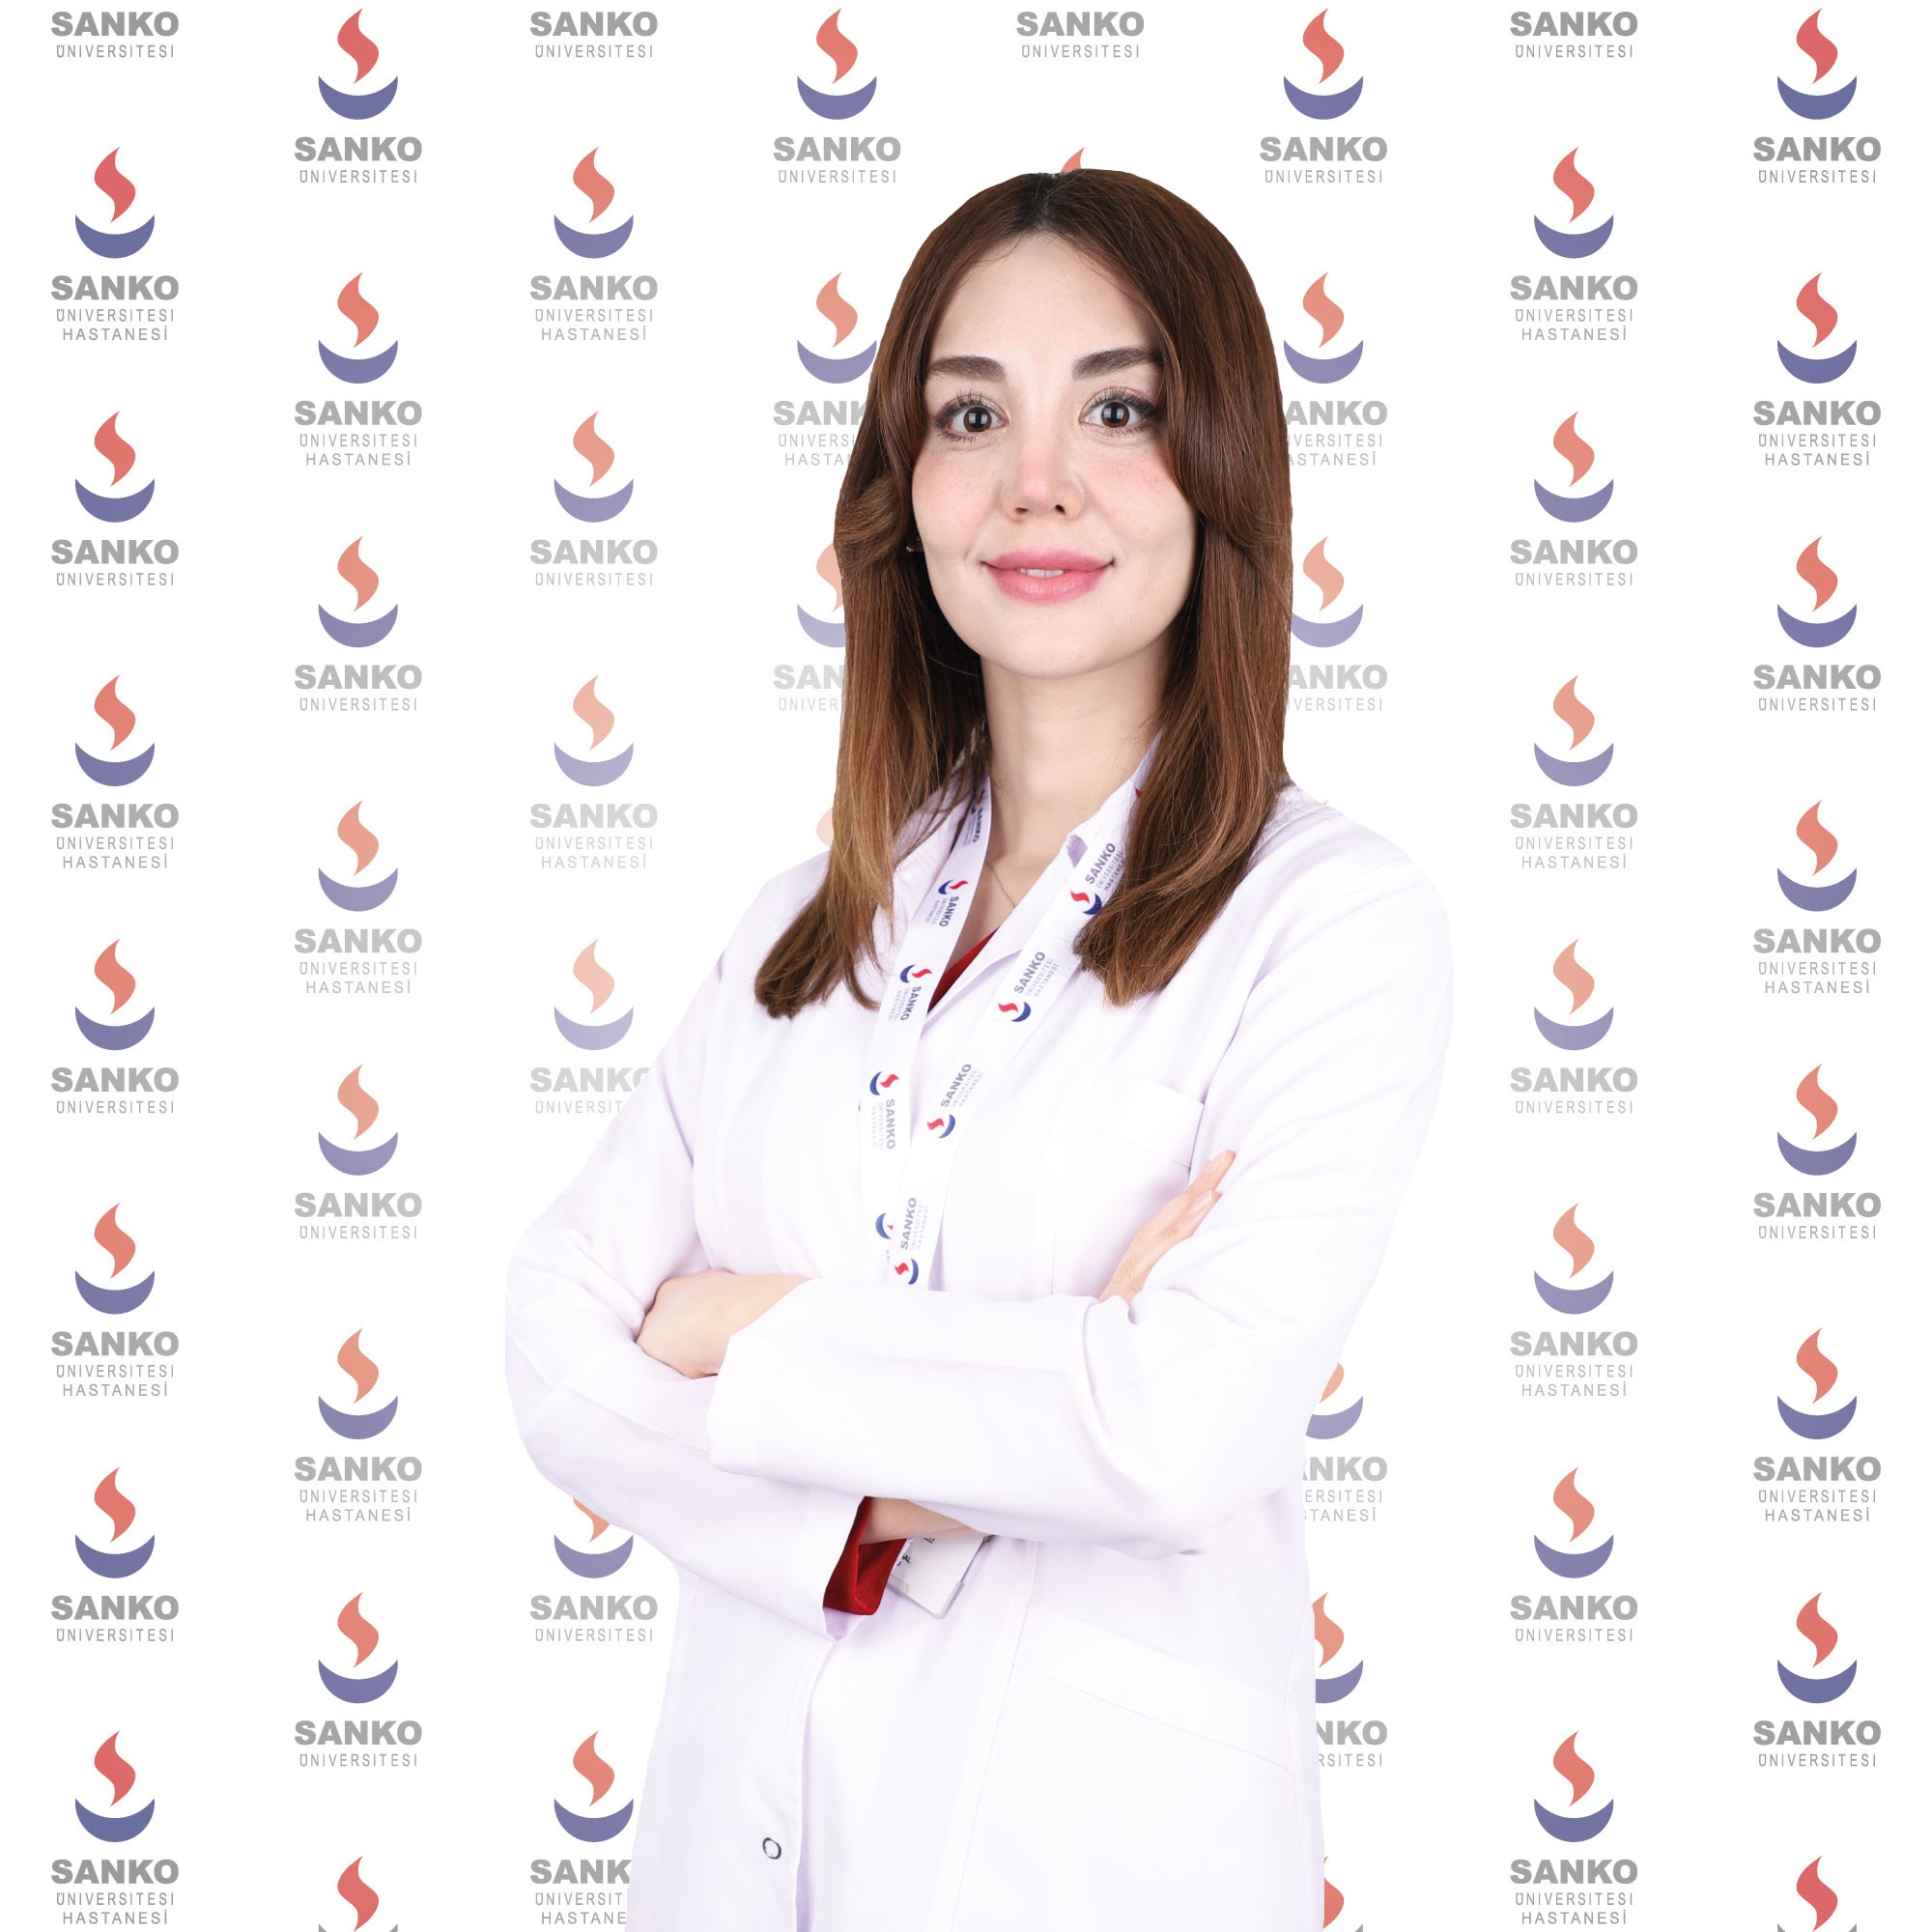 Enfeksiyon Hastalıkları Uzmanı Dr. Türkmen Sanko’da